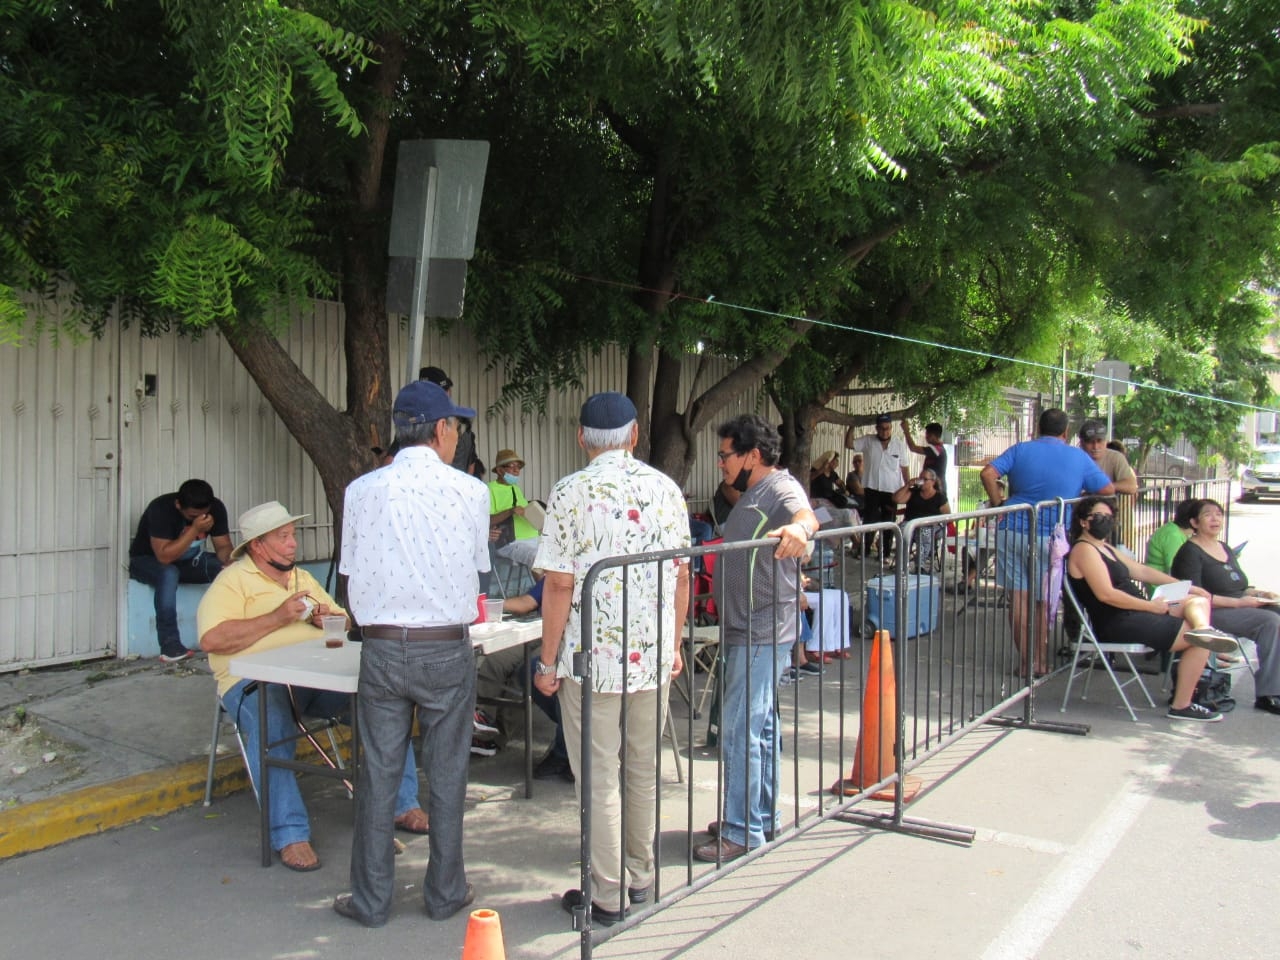 Los jubilados de Pemex se mantienen desde tempranas horas frente a la Embajada de EU pese a altercados con los policías